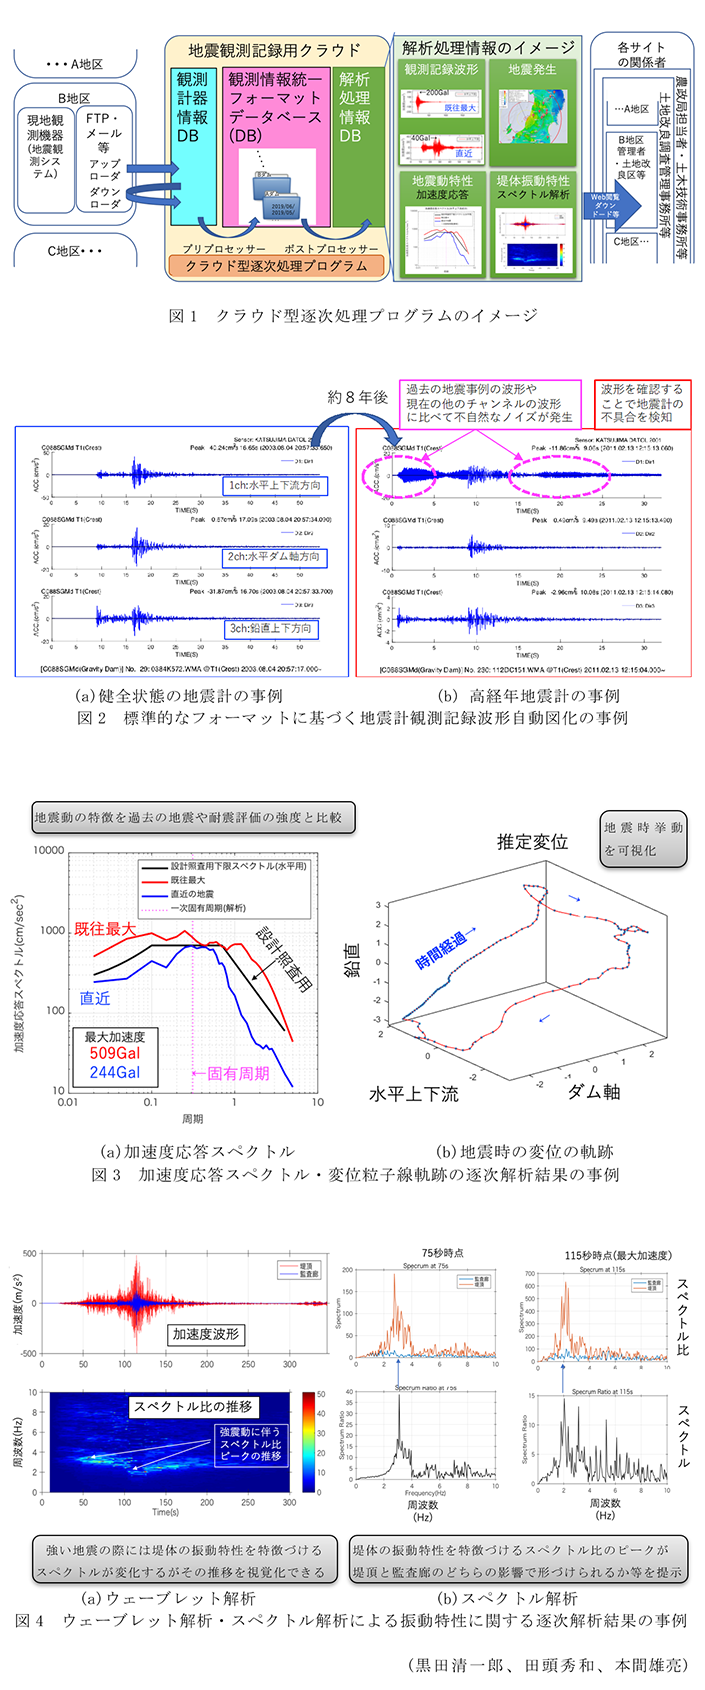 図1 クラウド型逐次処理プログラムのイメージ,図2 標準的なフォーマットに基づく地震計観測記録波形自動図化の事例,図3 加速度応答スペクトル・変位粒子線軌跡の逐次解析結果の事例,図4 ウェーブレット解析・スペクトル解析による振動特性に関する逐次解析結果の事例